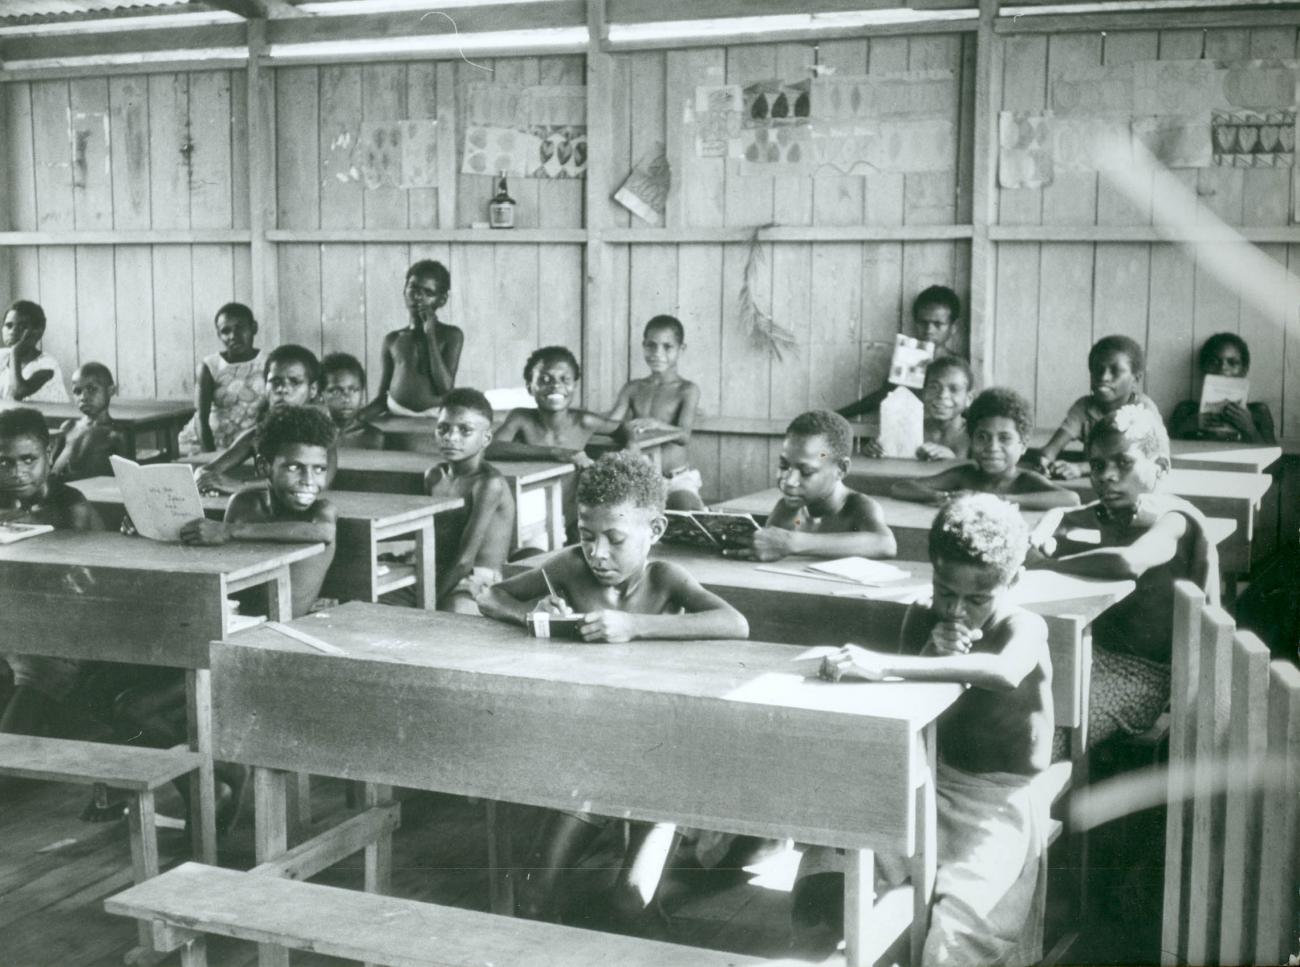 BD/40/40 - 
Kinderen in de klas op school
